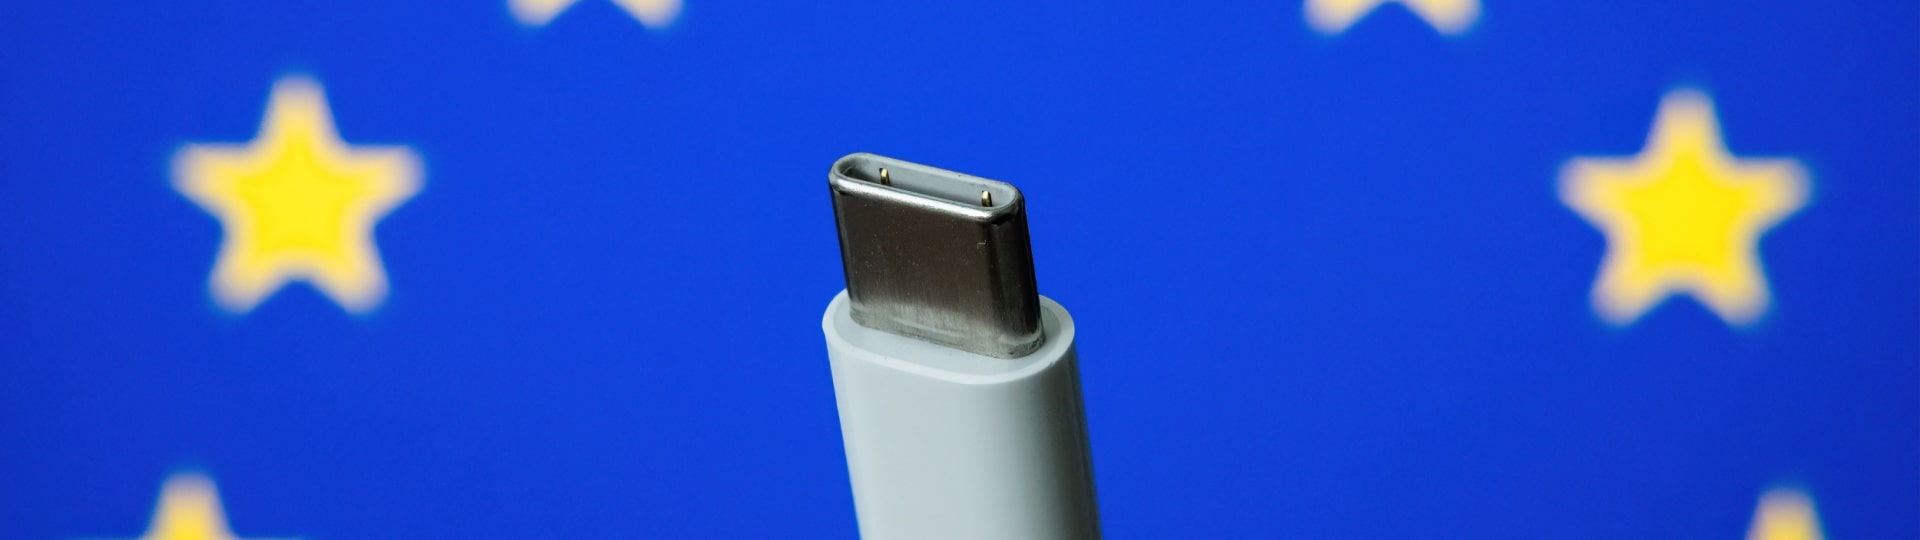 Nový iPhone bude s nabíječkou USB-C